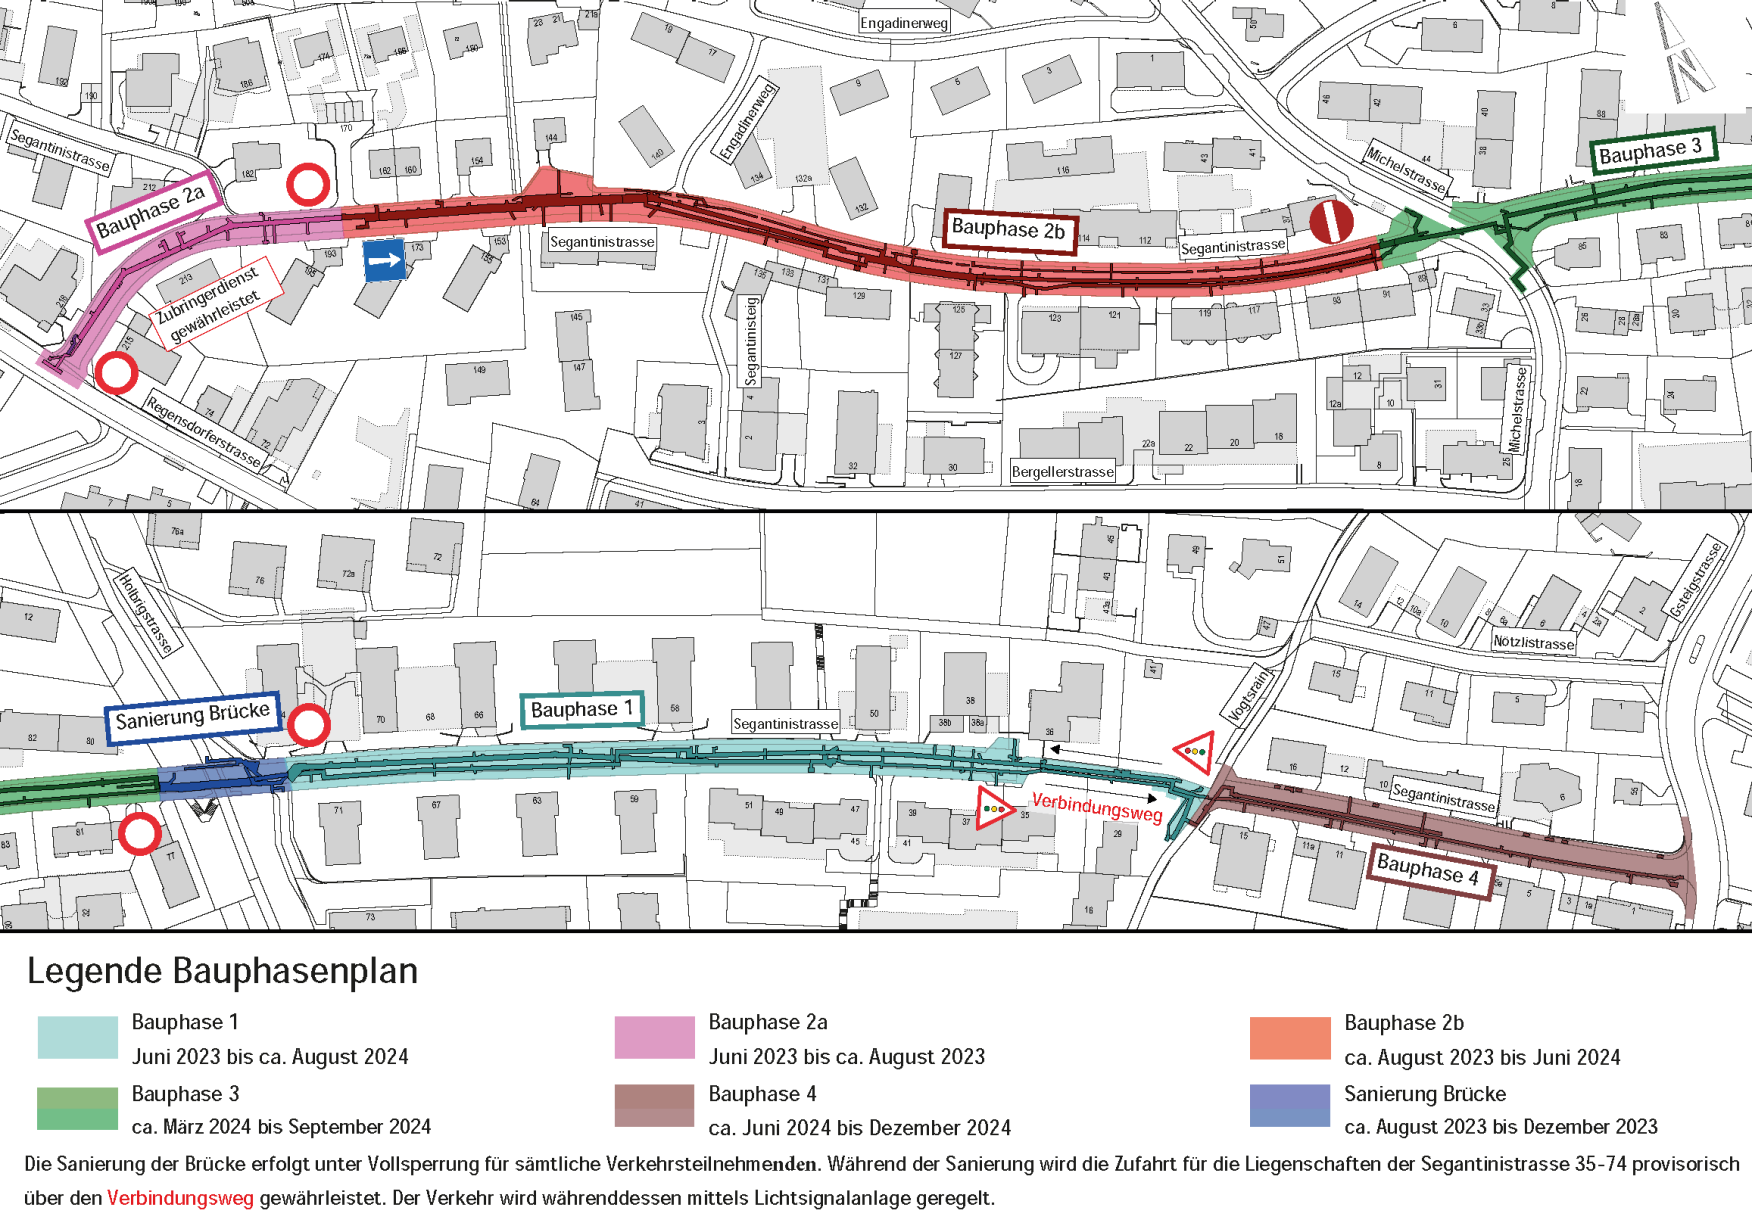 Plan der Segantinistrasse mit Bauphasen und Verkehrsführung